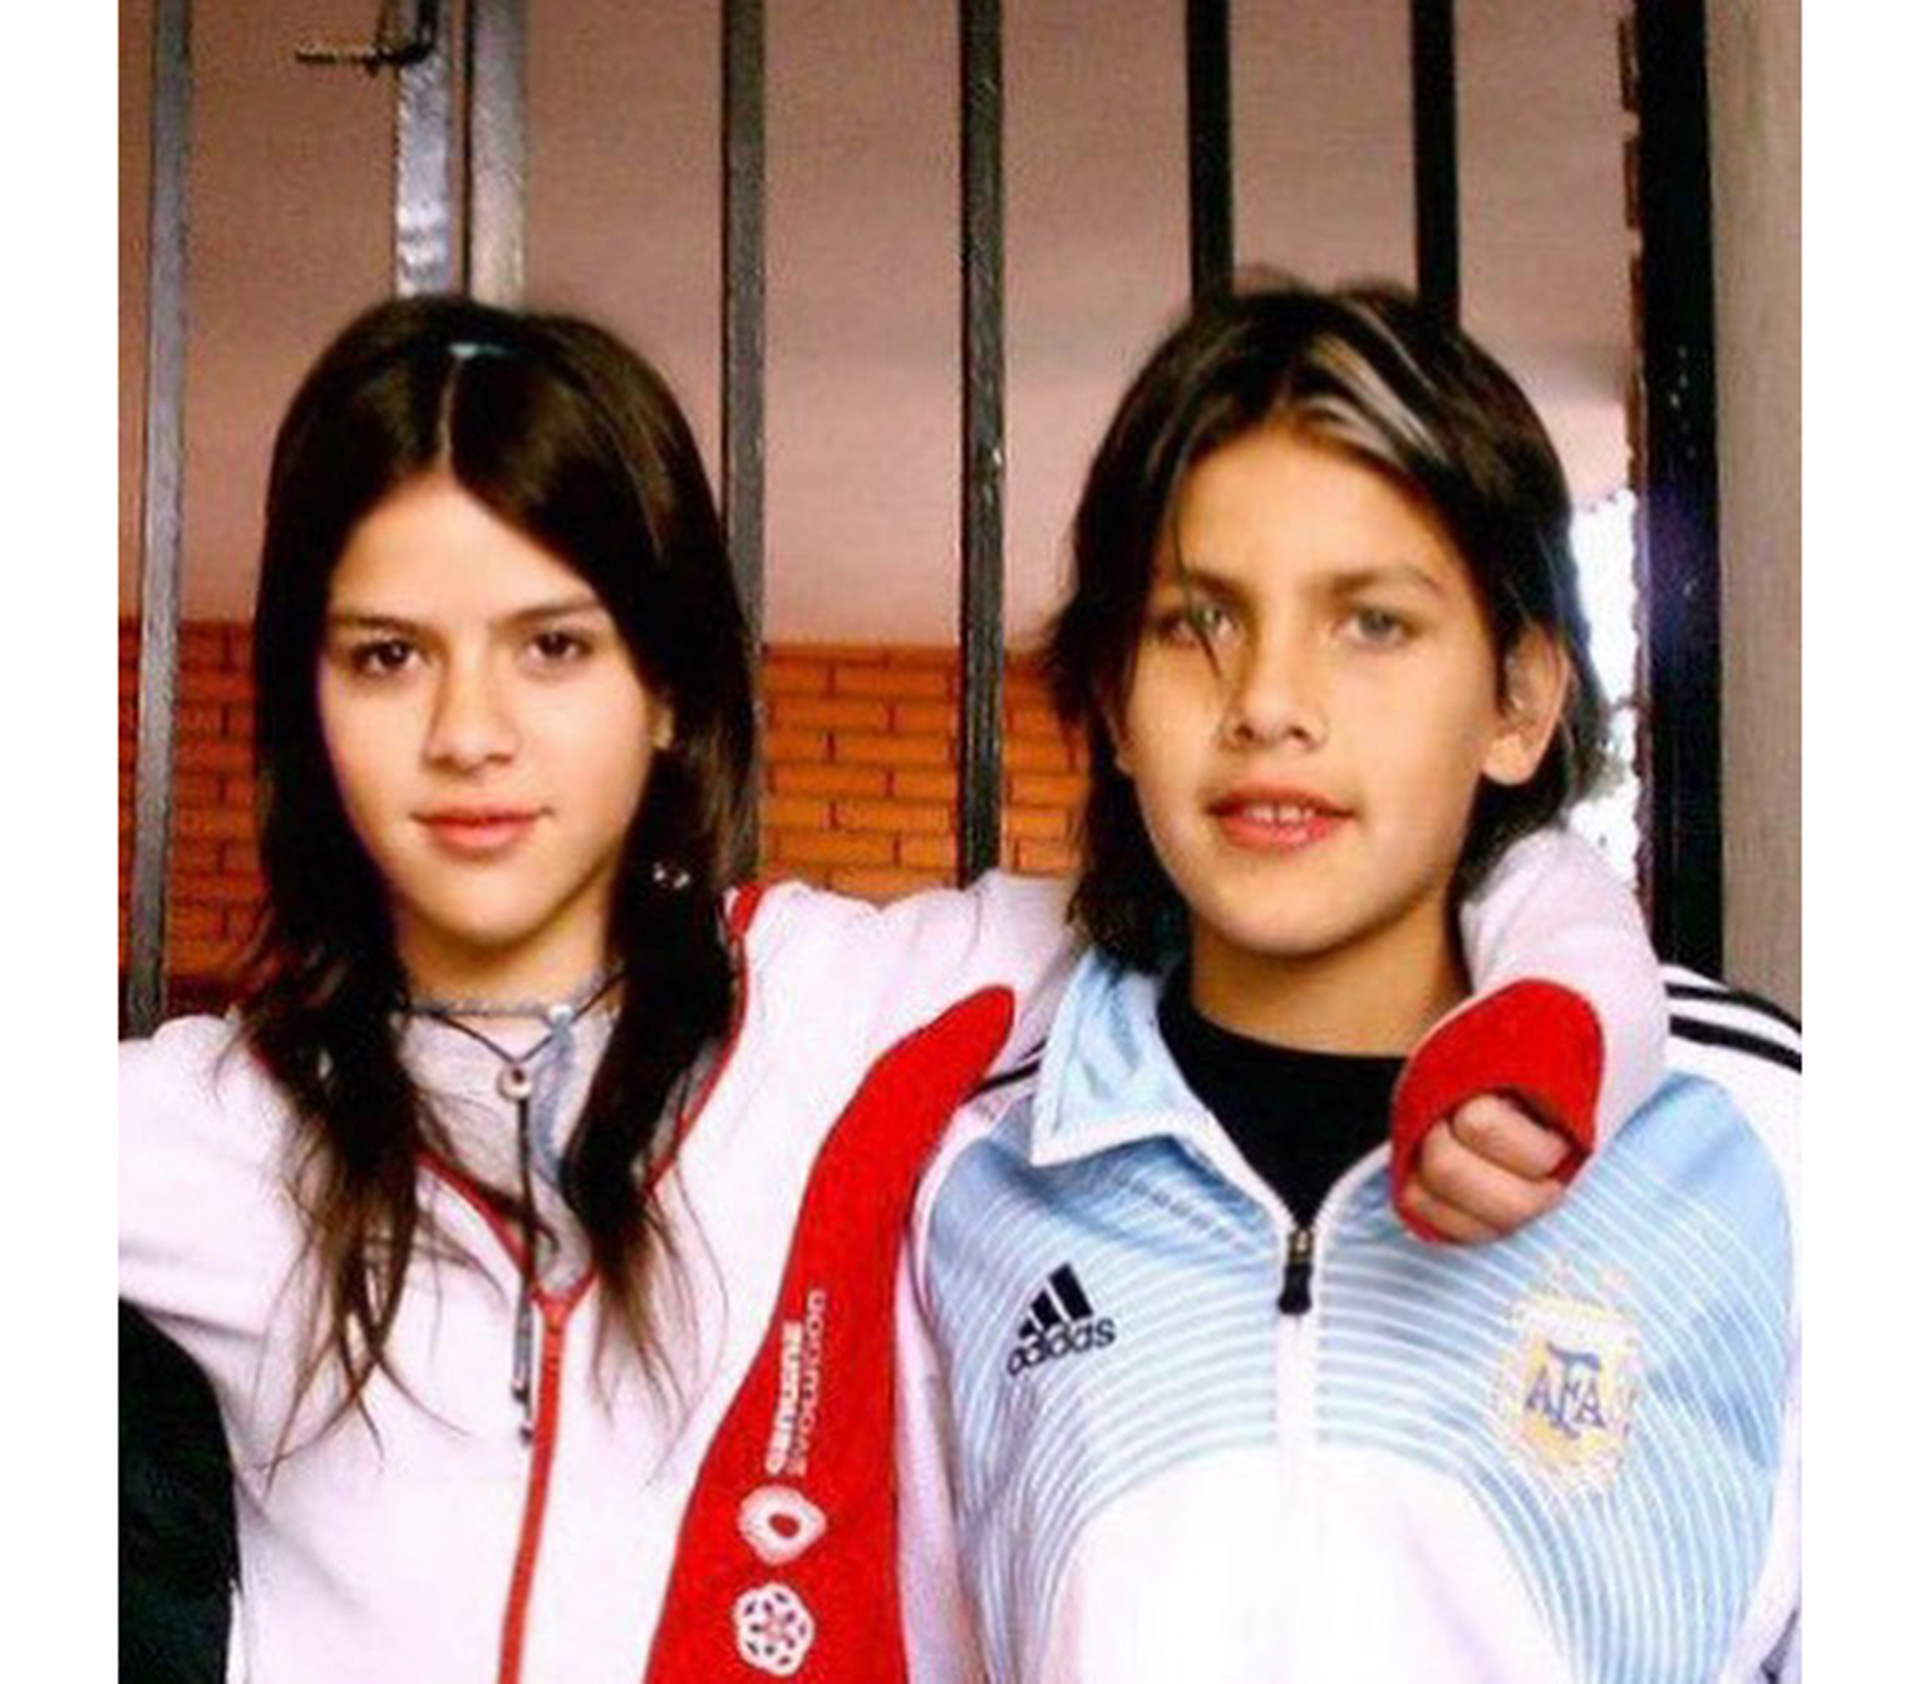 Camila y Leandro cuando todavía eran unos chicos (@ccamilagalantee)